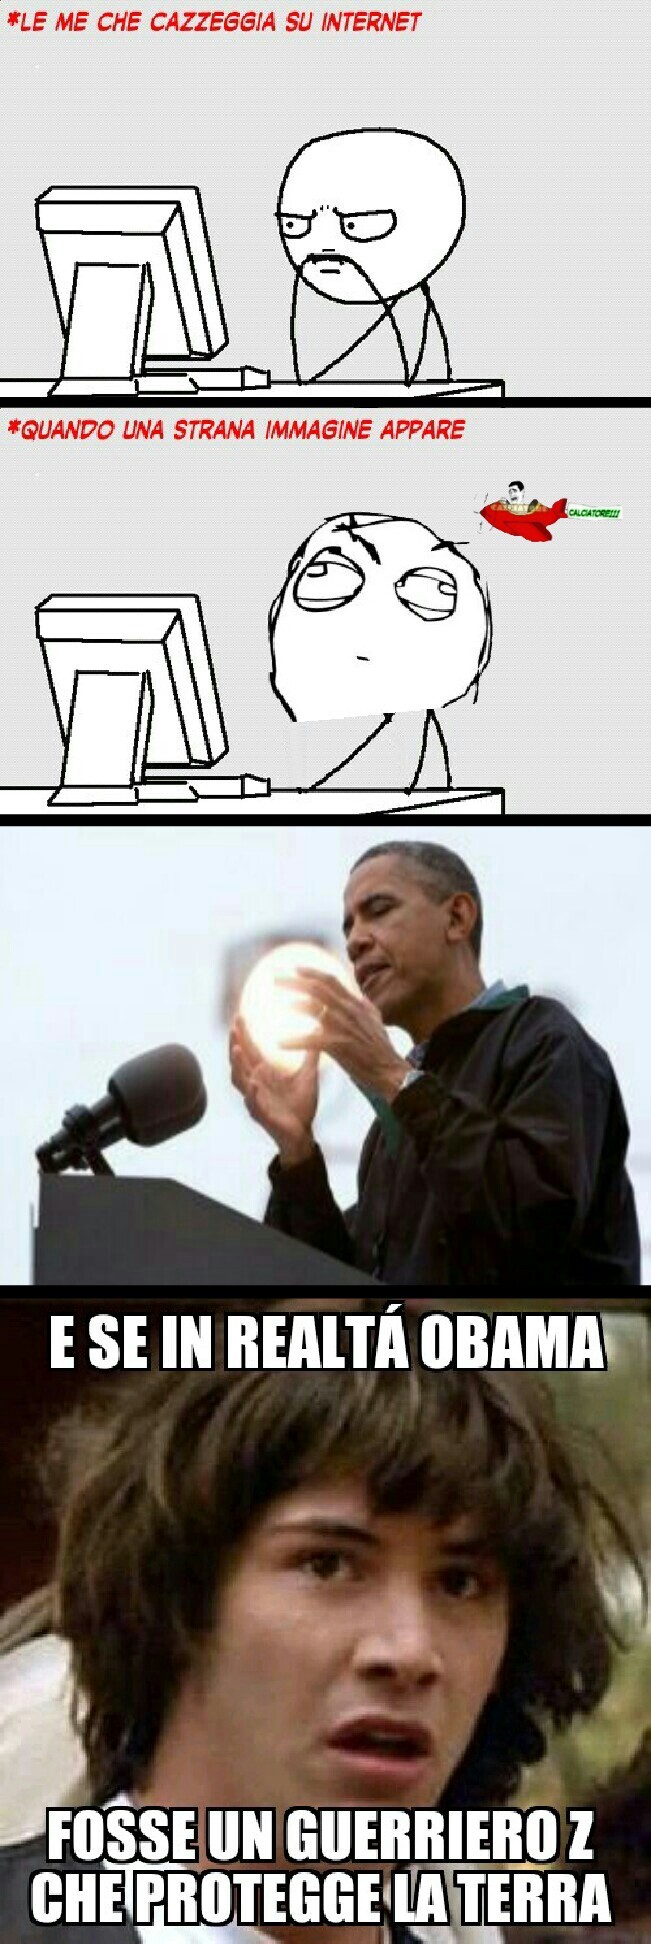 Obama is love - meme